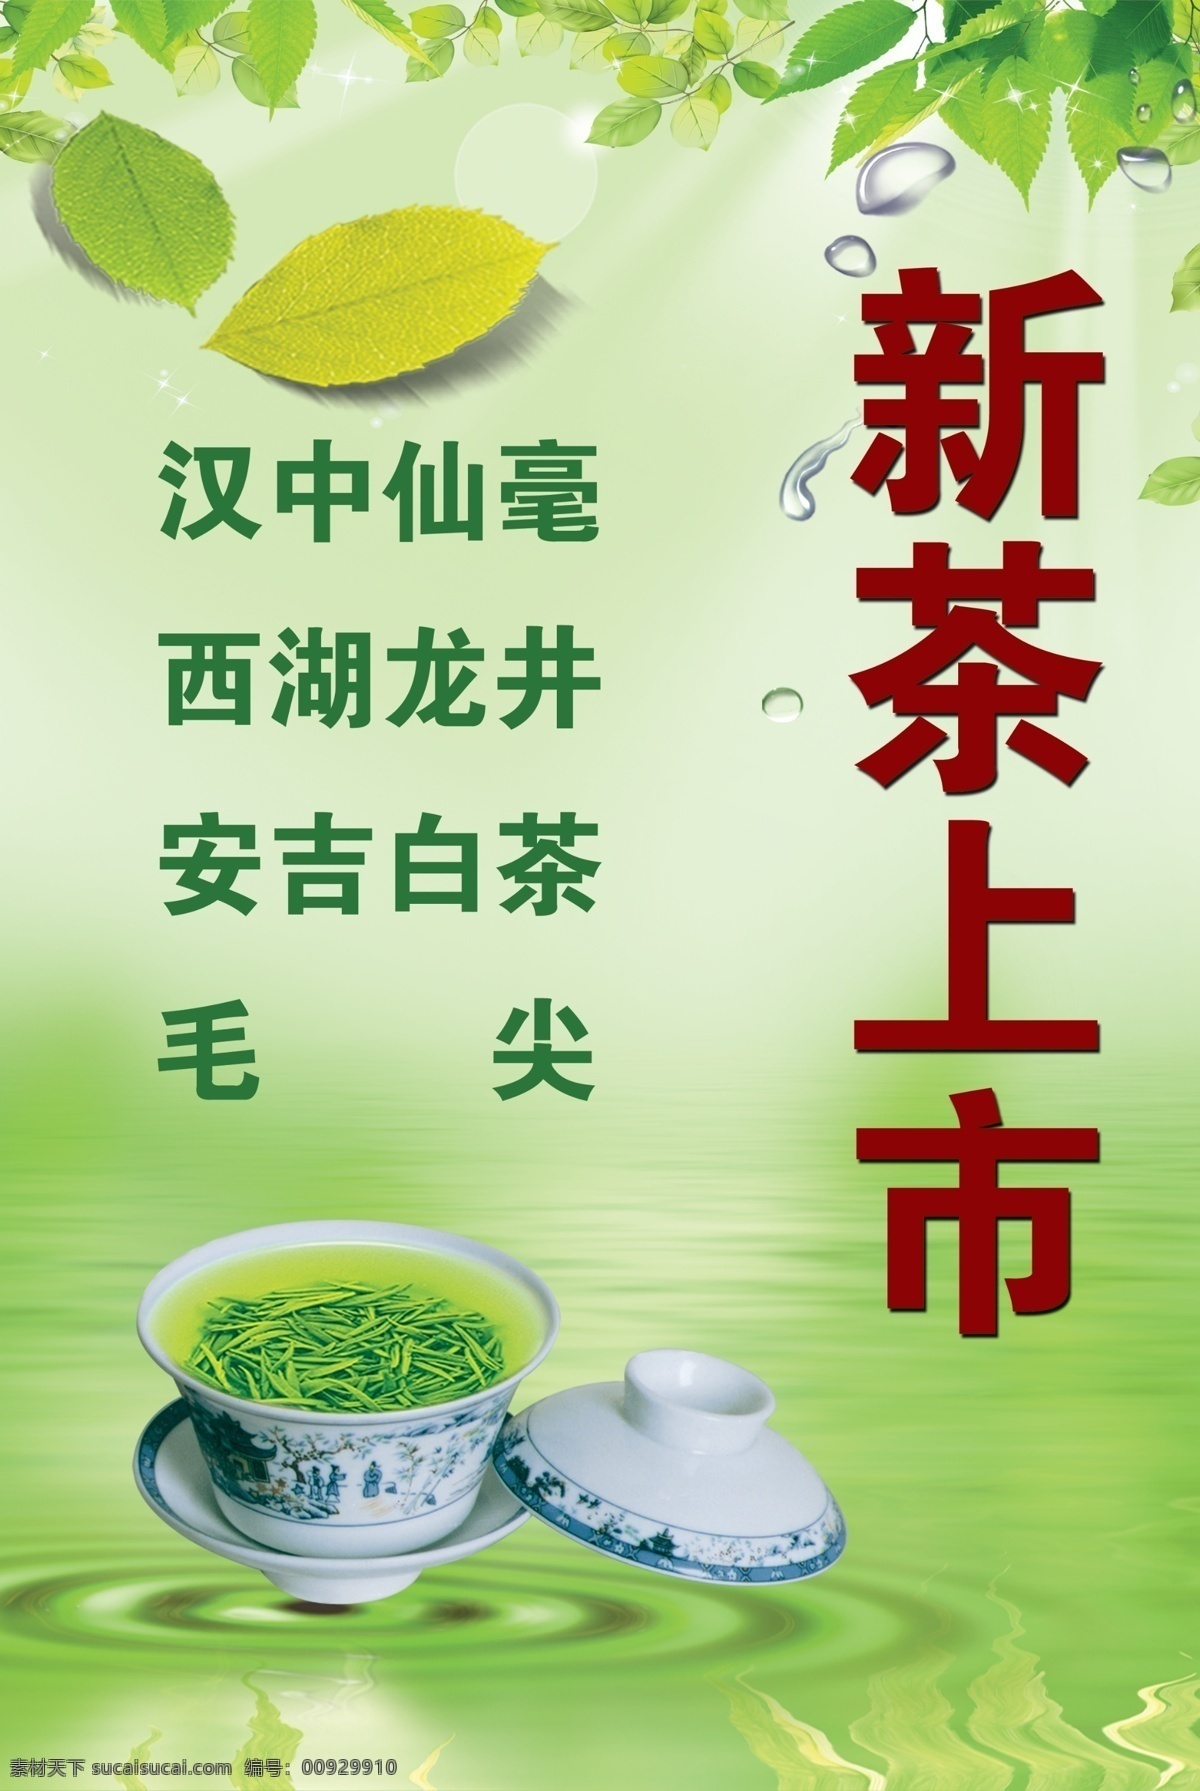 绿色背景 绿叶的淡雅 新茶上市 一杯清茶 汉中仙毫 西湖龙井 安吉白茶 毛尖 生活百科 餐饮美食